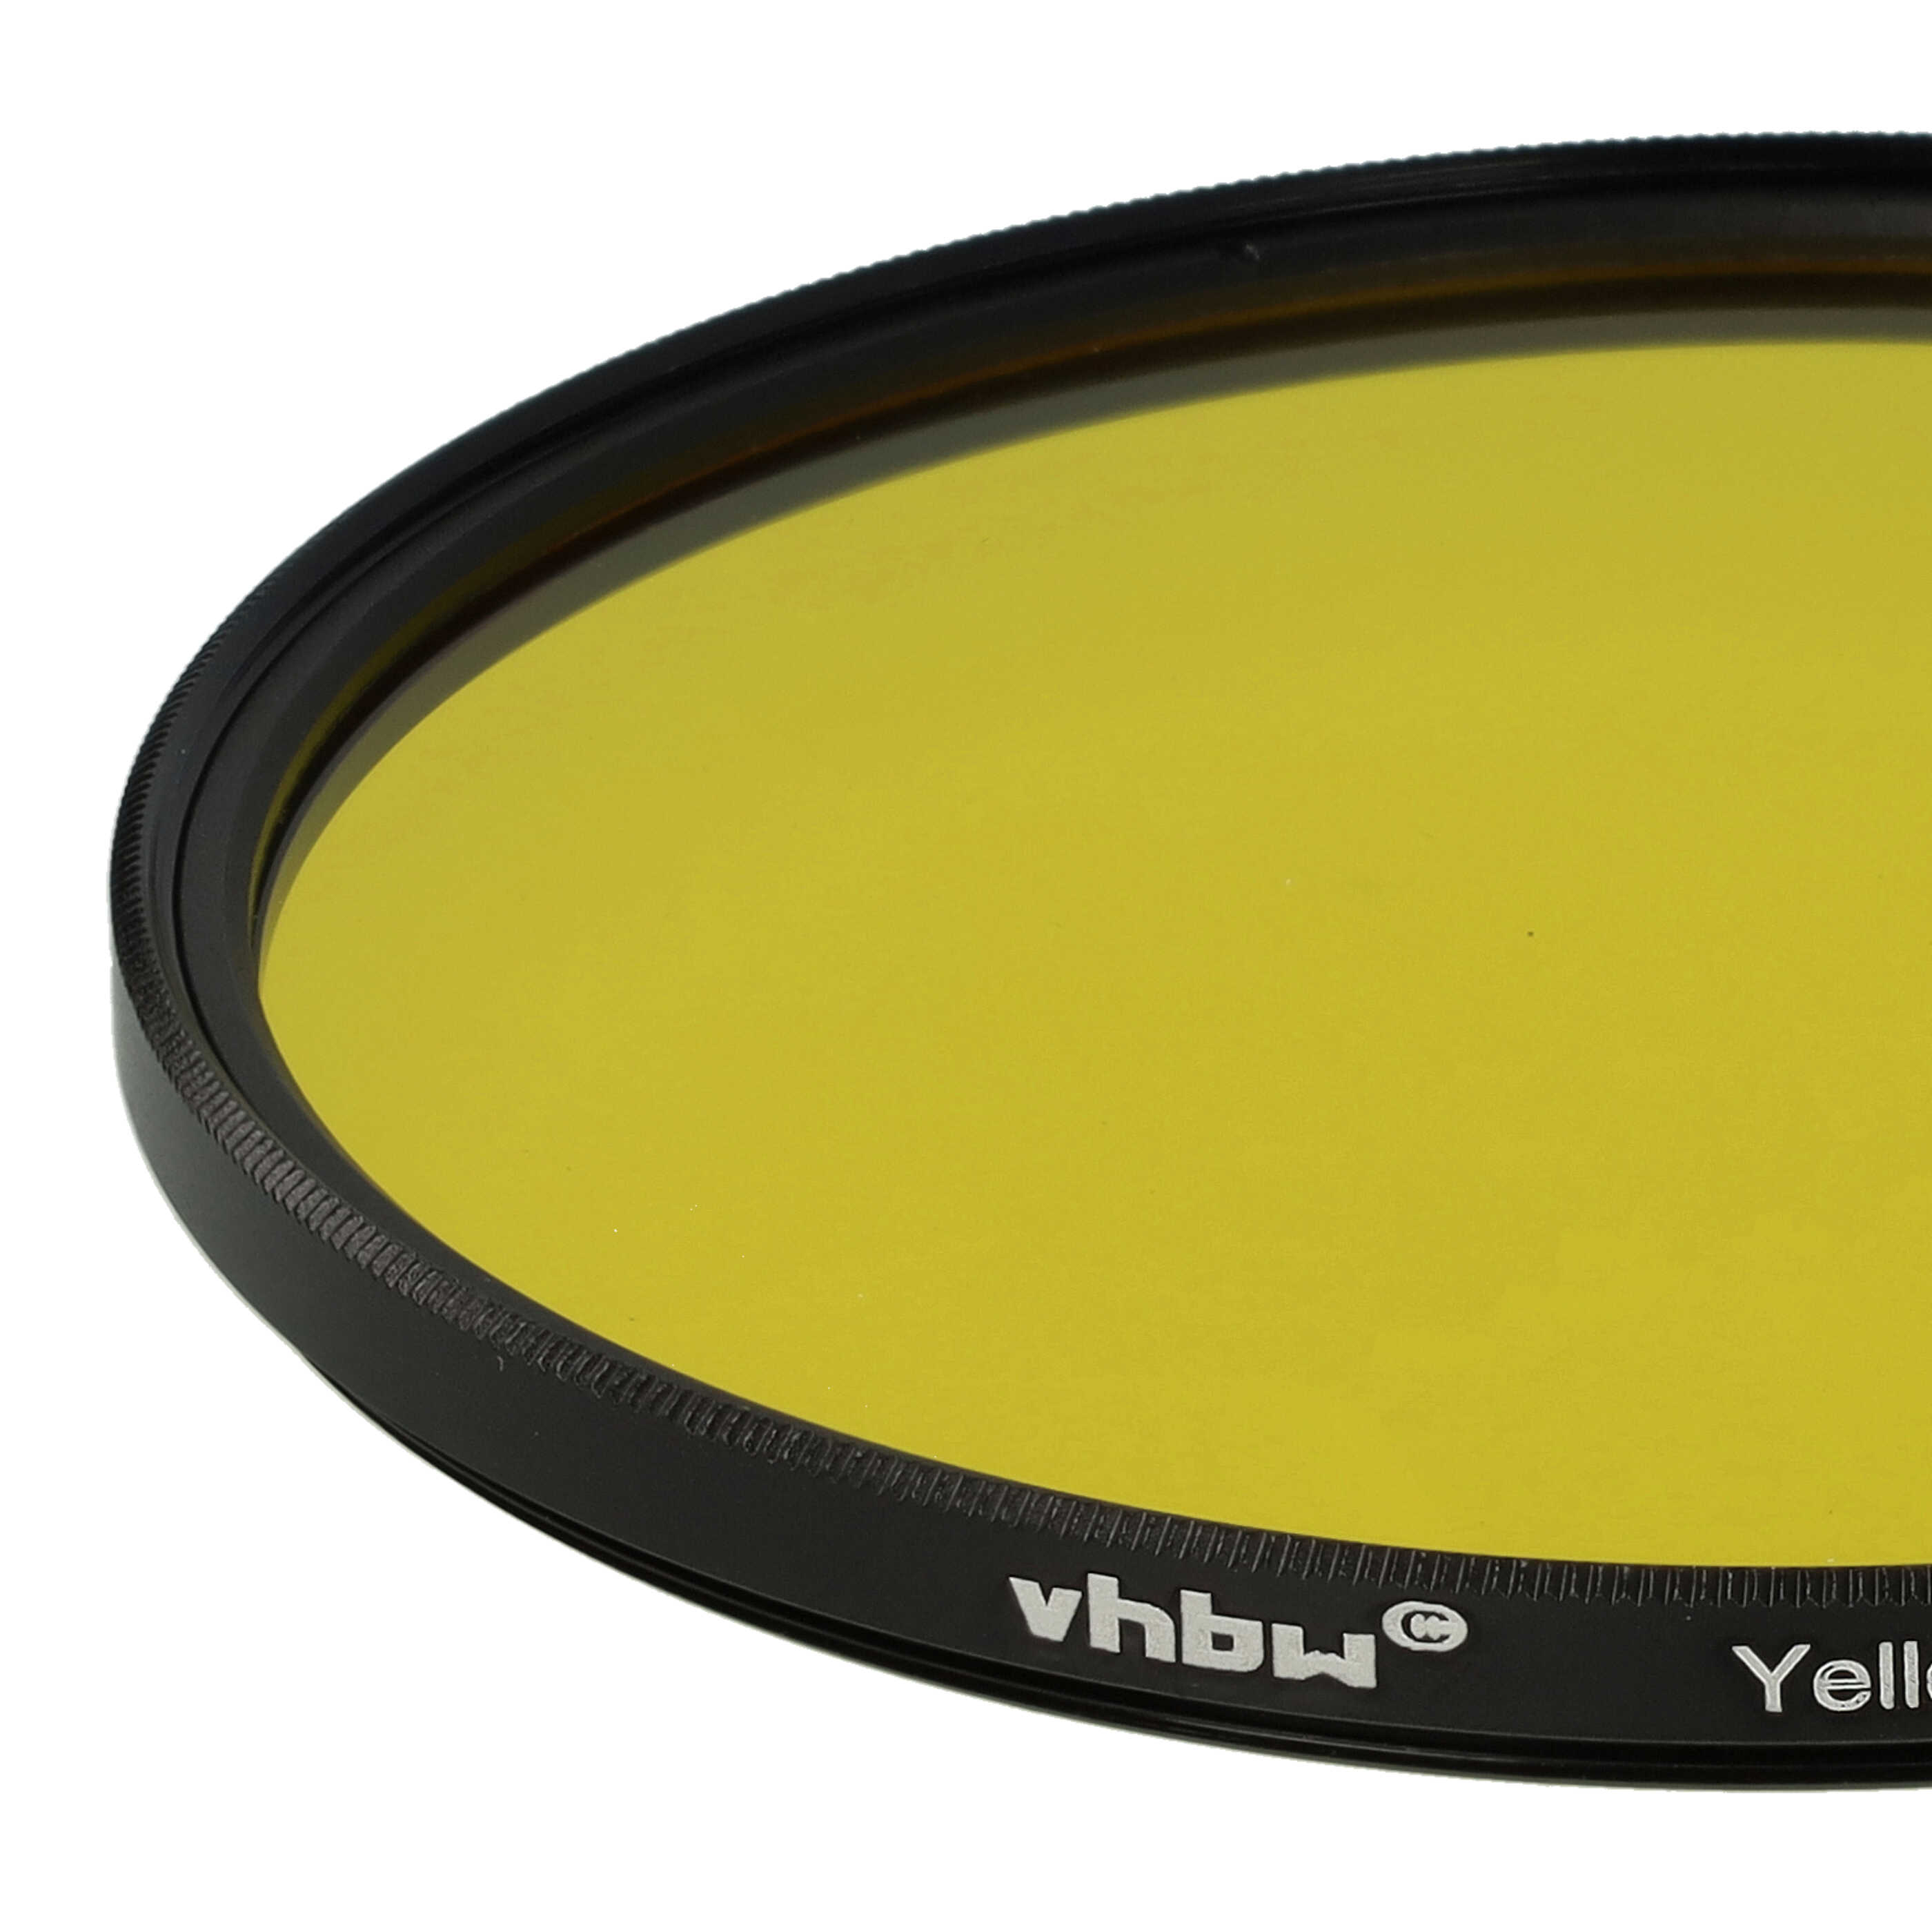 Filtr fotograficzny na obiektywy z gwintem 82 mm - filtr żółty